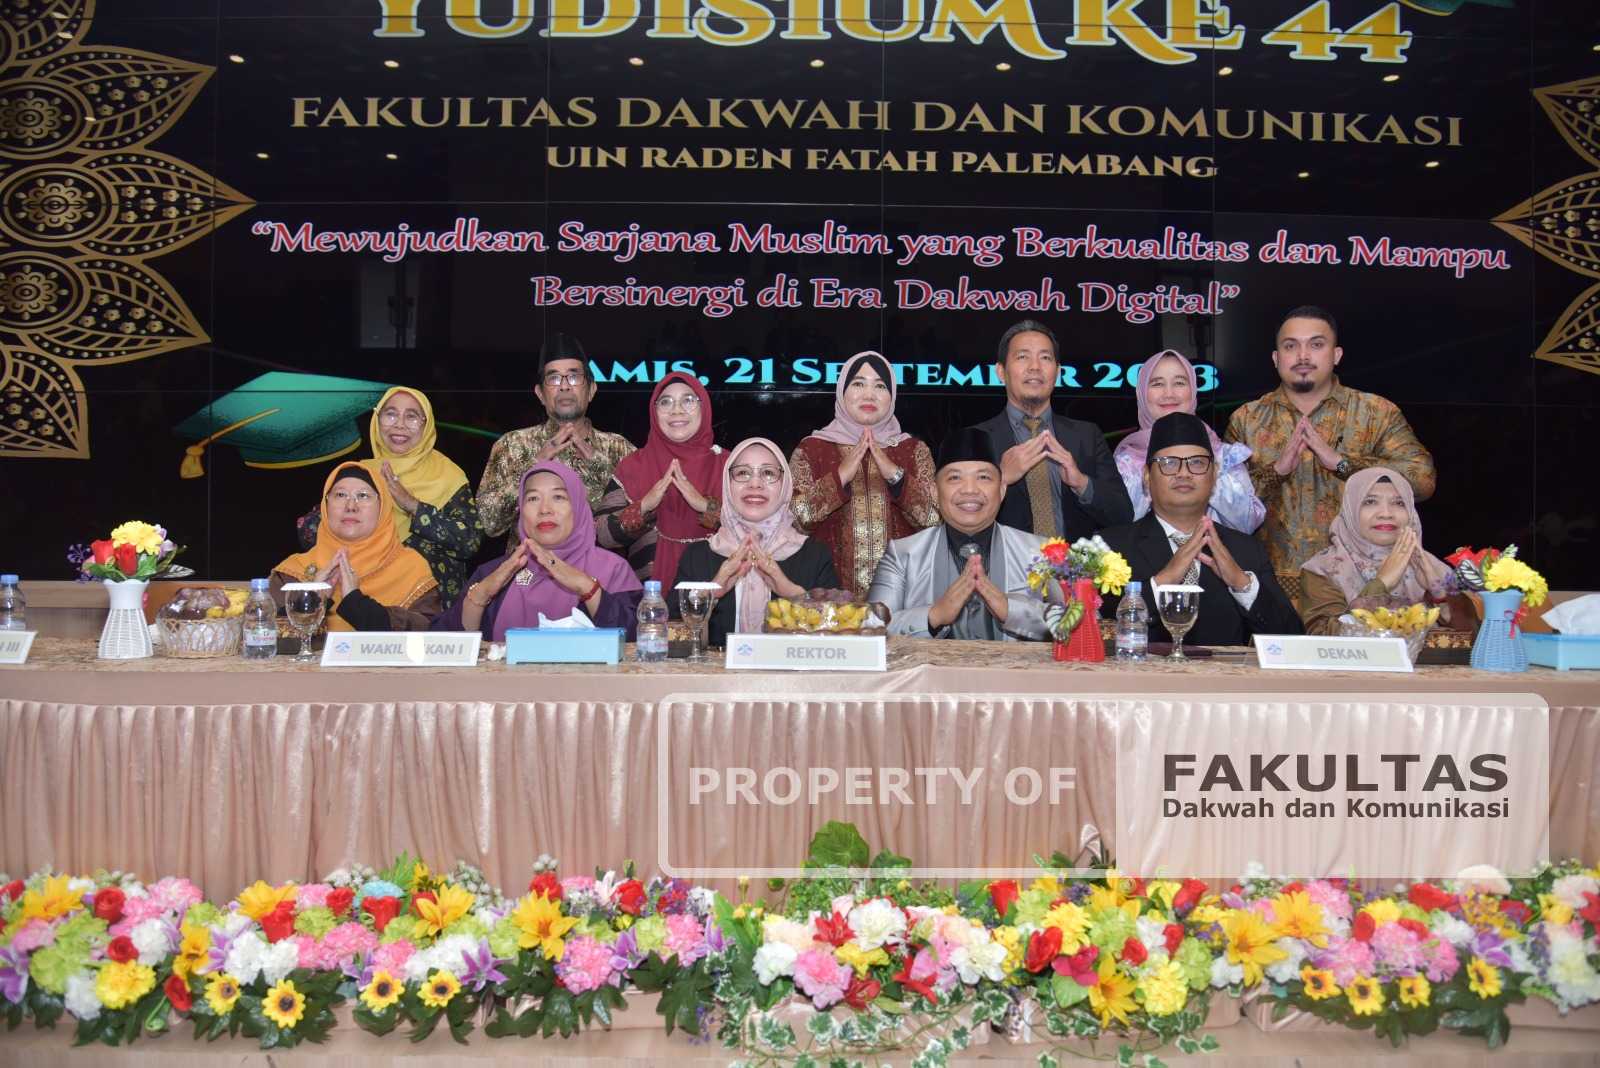 Fakultas Dakwah dan Komunikasi (FDK) Universitas Islam Negeri (UIN) Raden Fatah  Palembang kembali selenggarakan kegiatan Yudisium ke-44